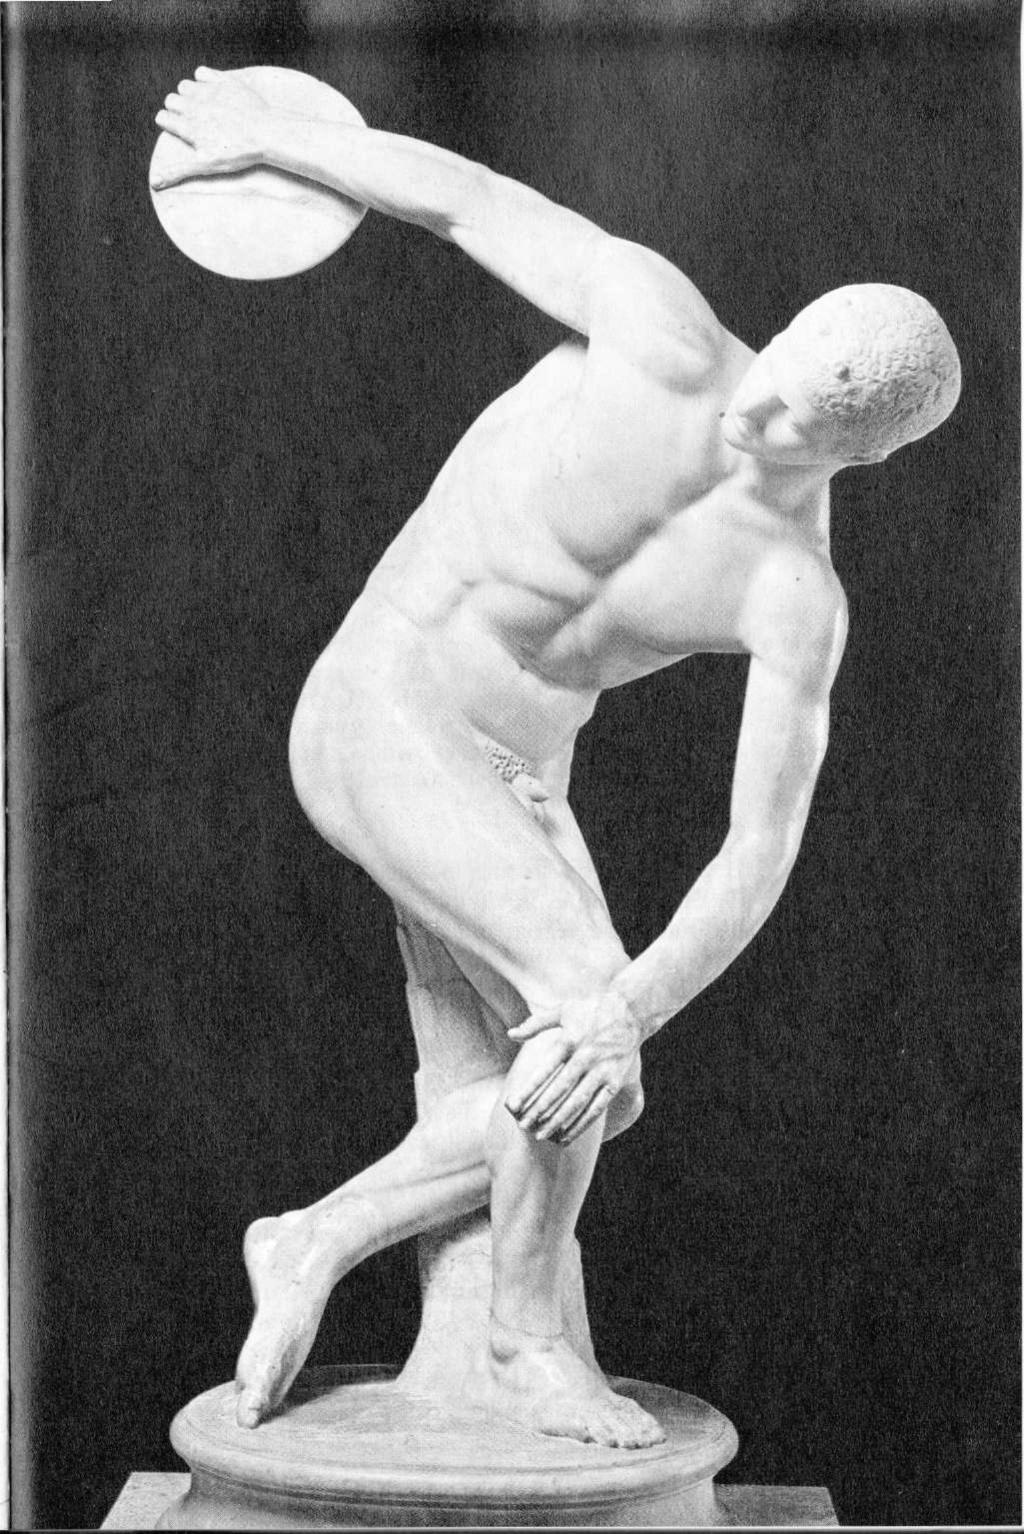 Ölçü olarak insan Heykel A İ.Ö. beşinci yüzyılda Miron'- un yaptığı Diskobolos ya da Disk Atan Adam heykeli, Yunanlılar'a göre evrenin en güzel şeyi olan insan vücudunu, önceden belirlenmiş kurallara